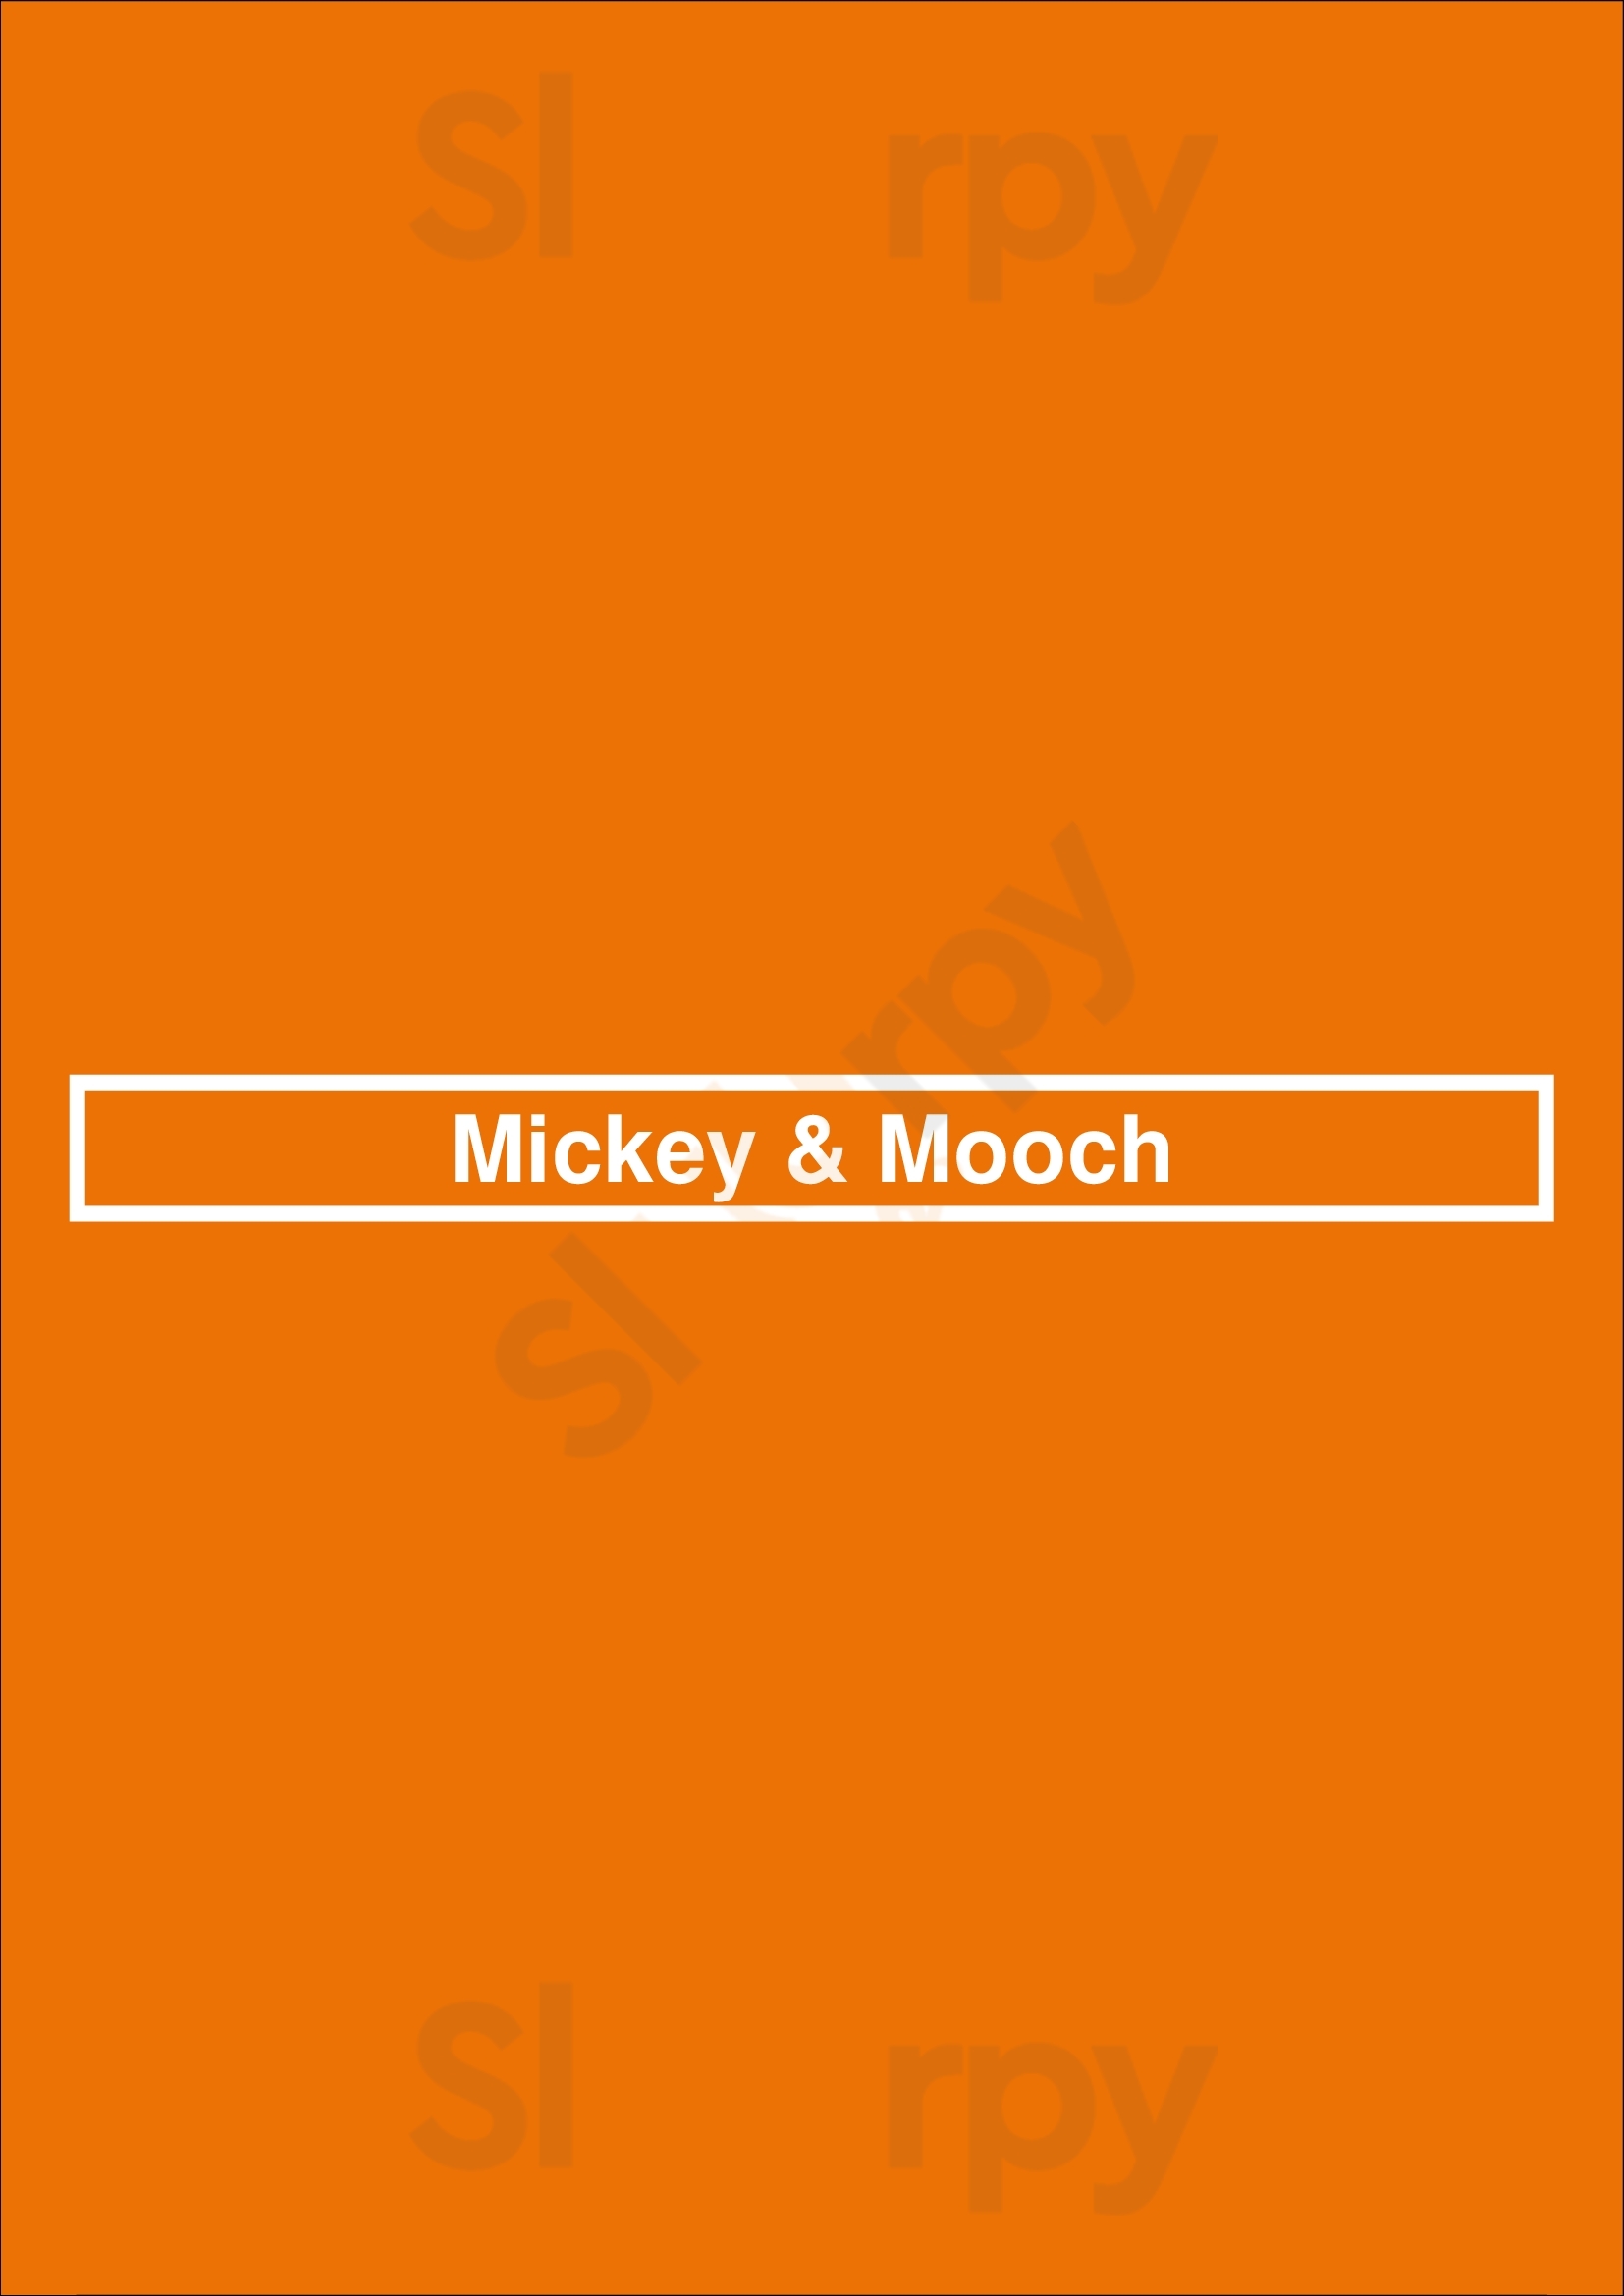 Mickey & Mooch Charlotte Menu - 1